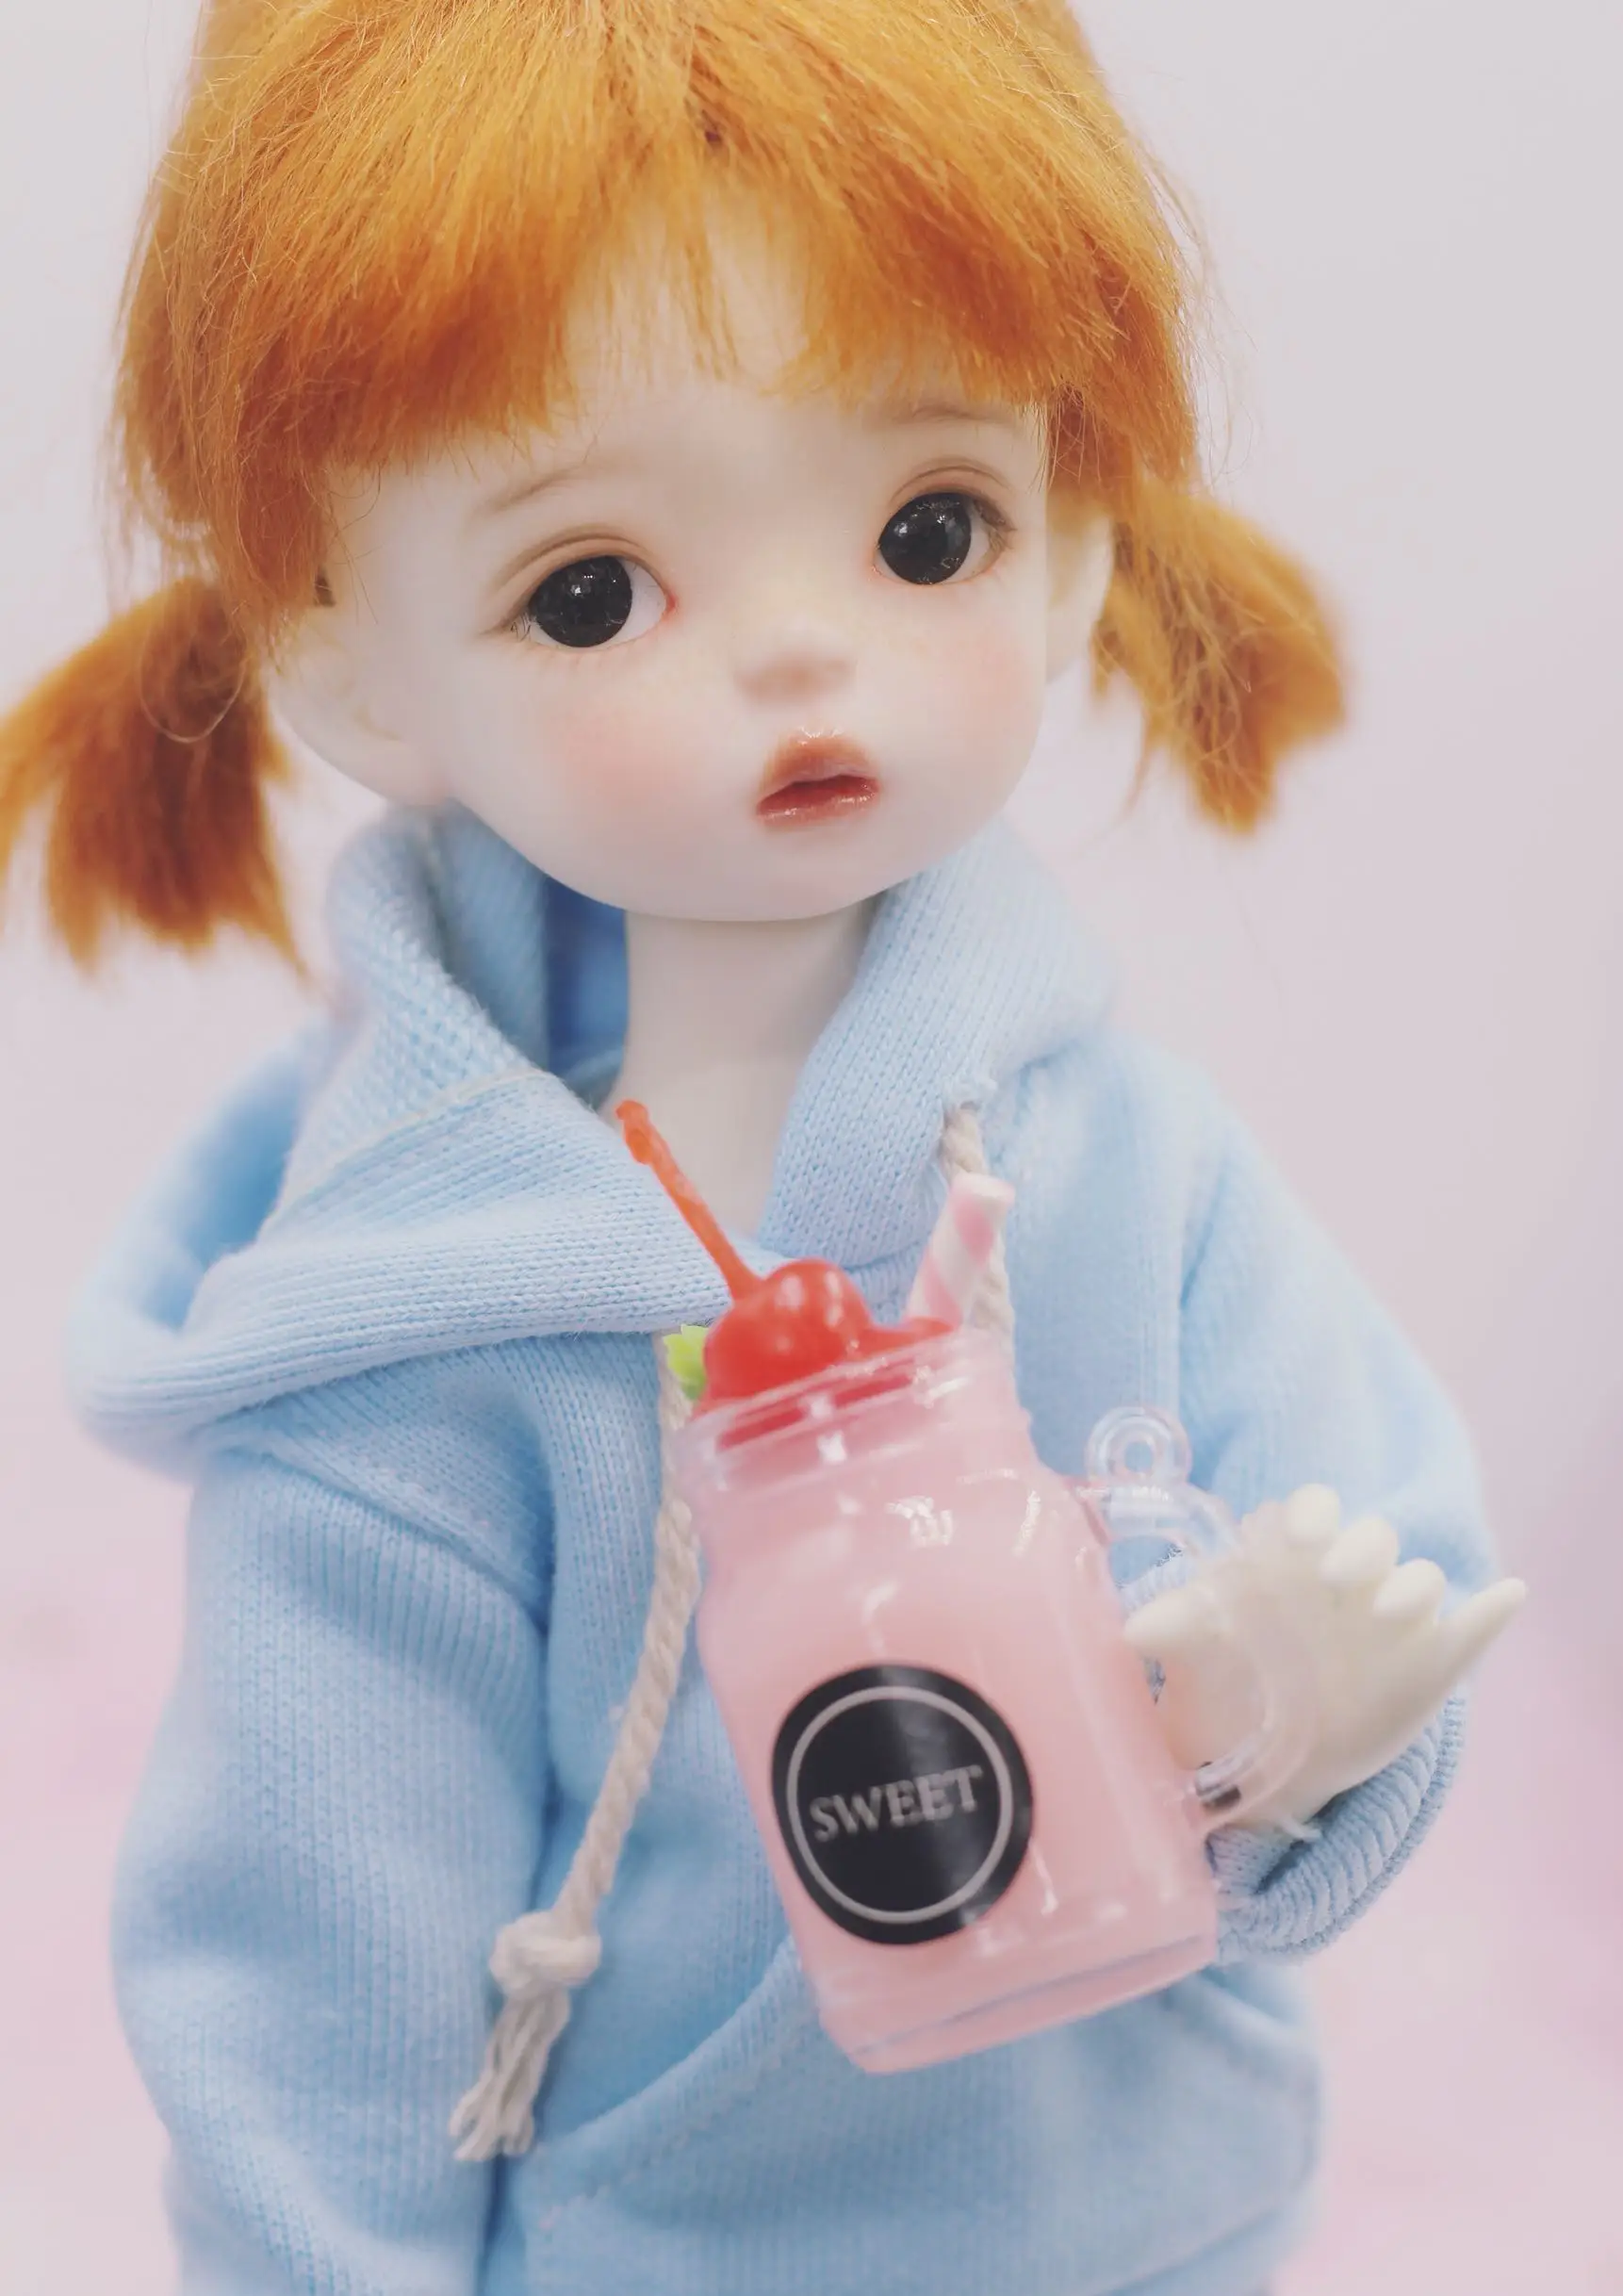 2 шт./лот 1:6 миниатюрный кукольный домик мини десерт розовый напиток для blyth 1/3 1/4 1/6 bjd кукольный домик Декор Аксессуары фото реквизит игрушки